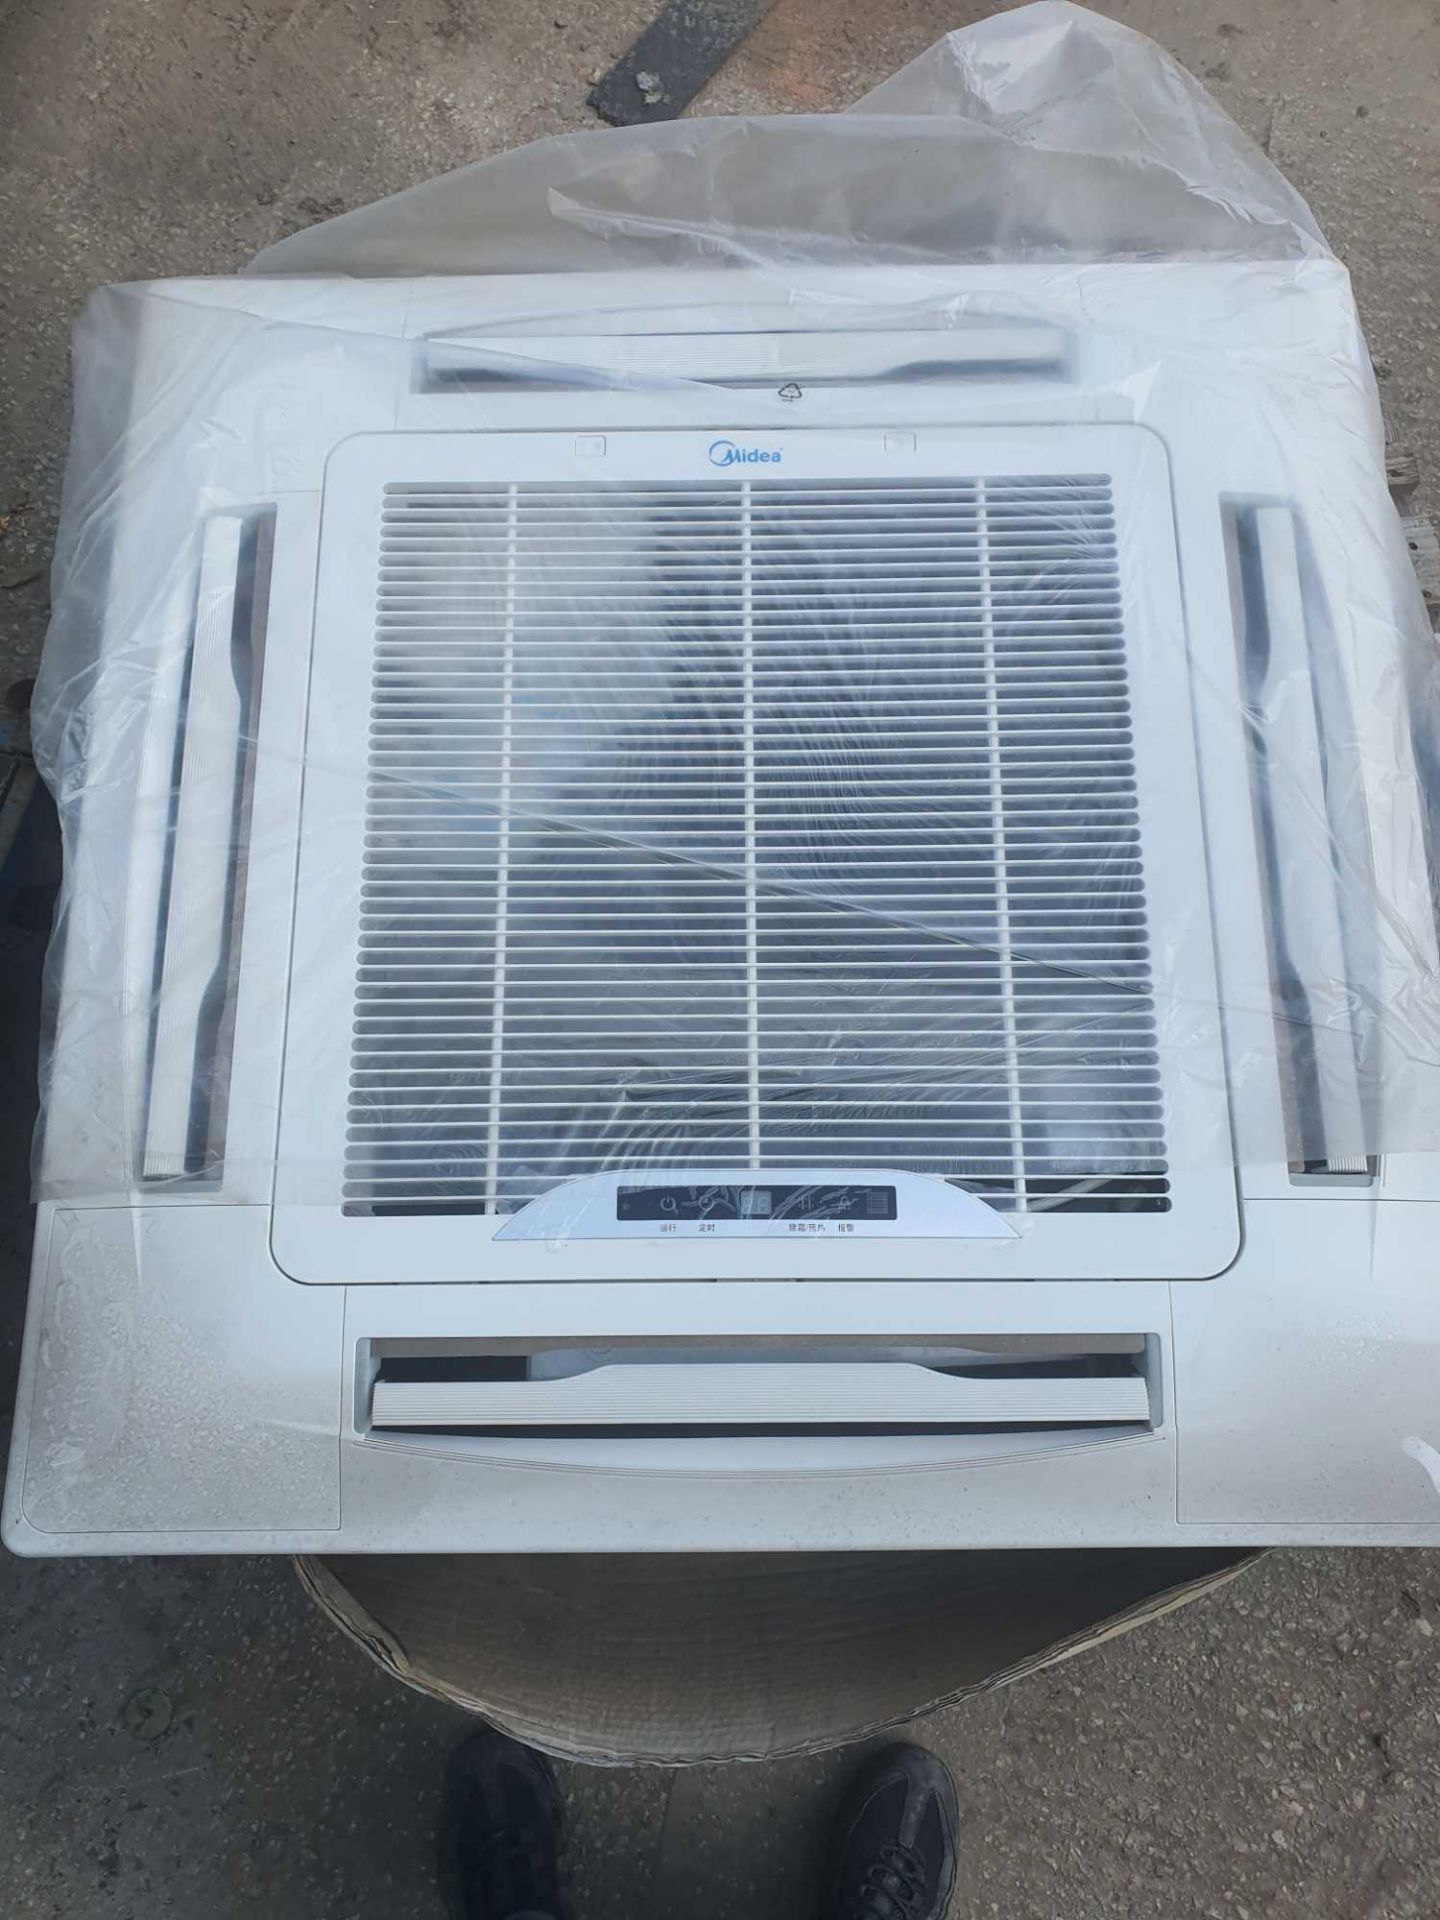 Midea Air conditioning unit